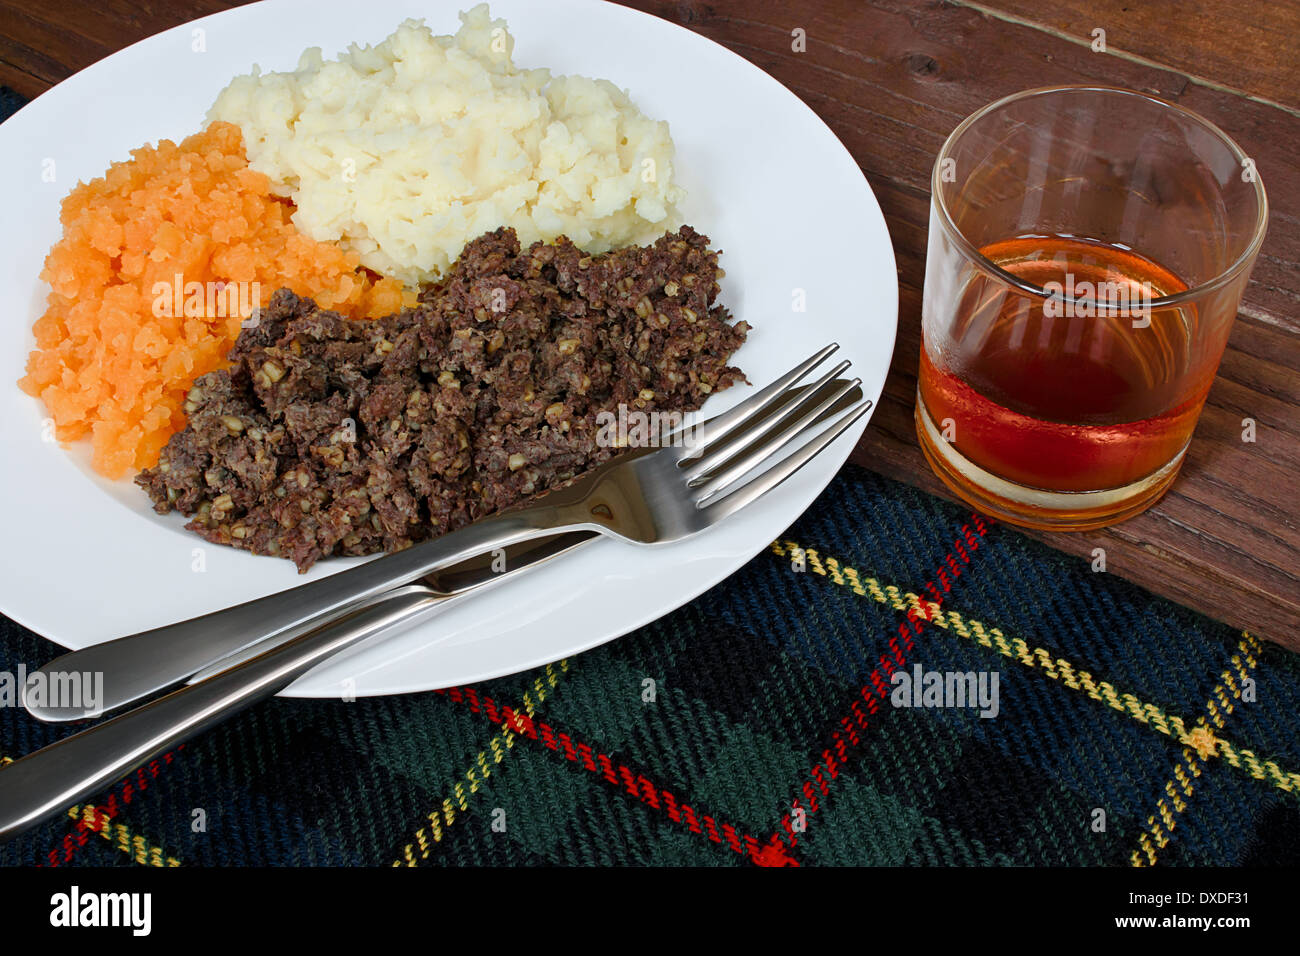 Tradicional escocesa haggis, neeps y tatties con whisky también conocido como quema la cena. Foto de stock